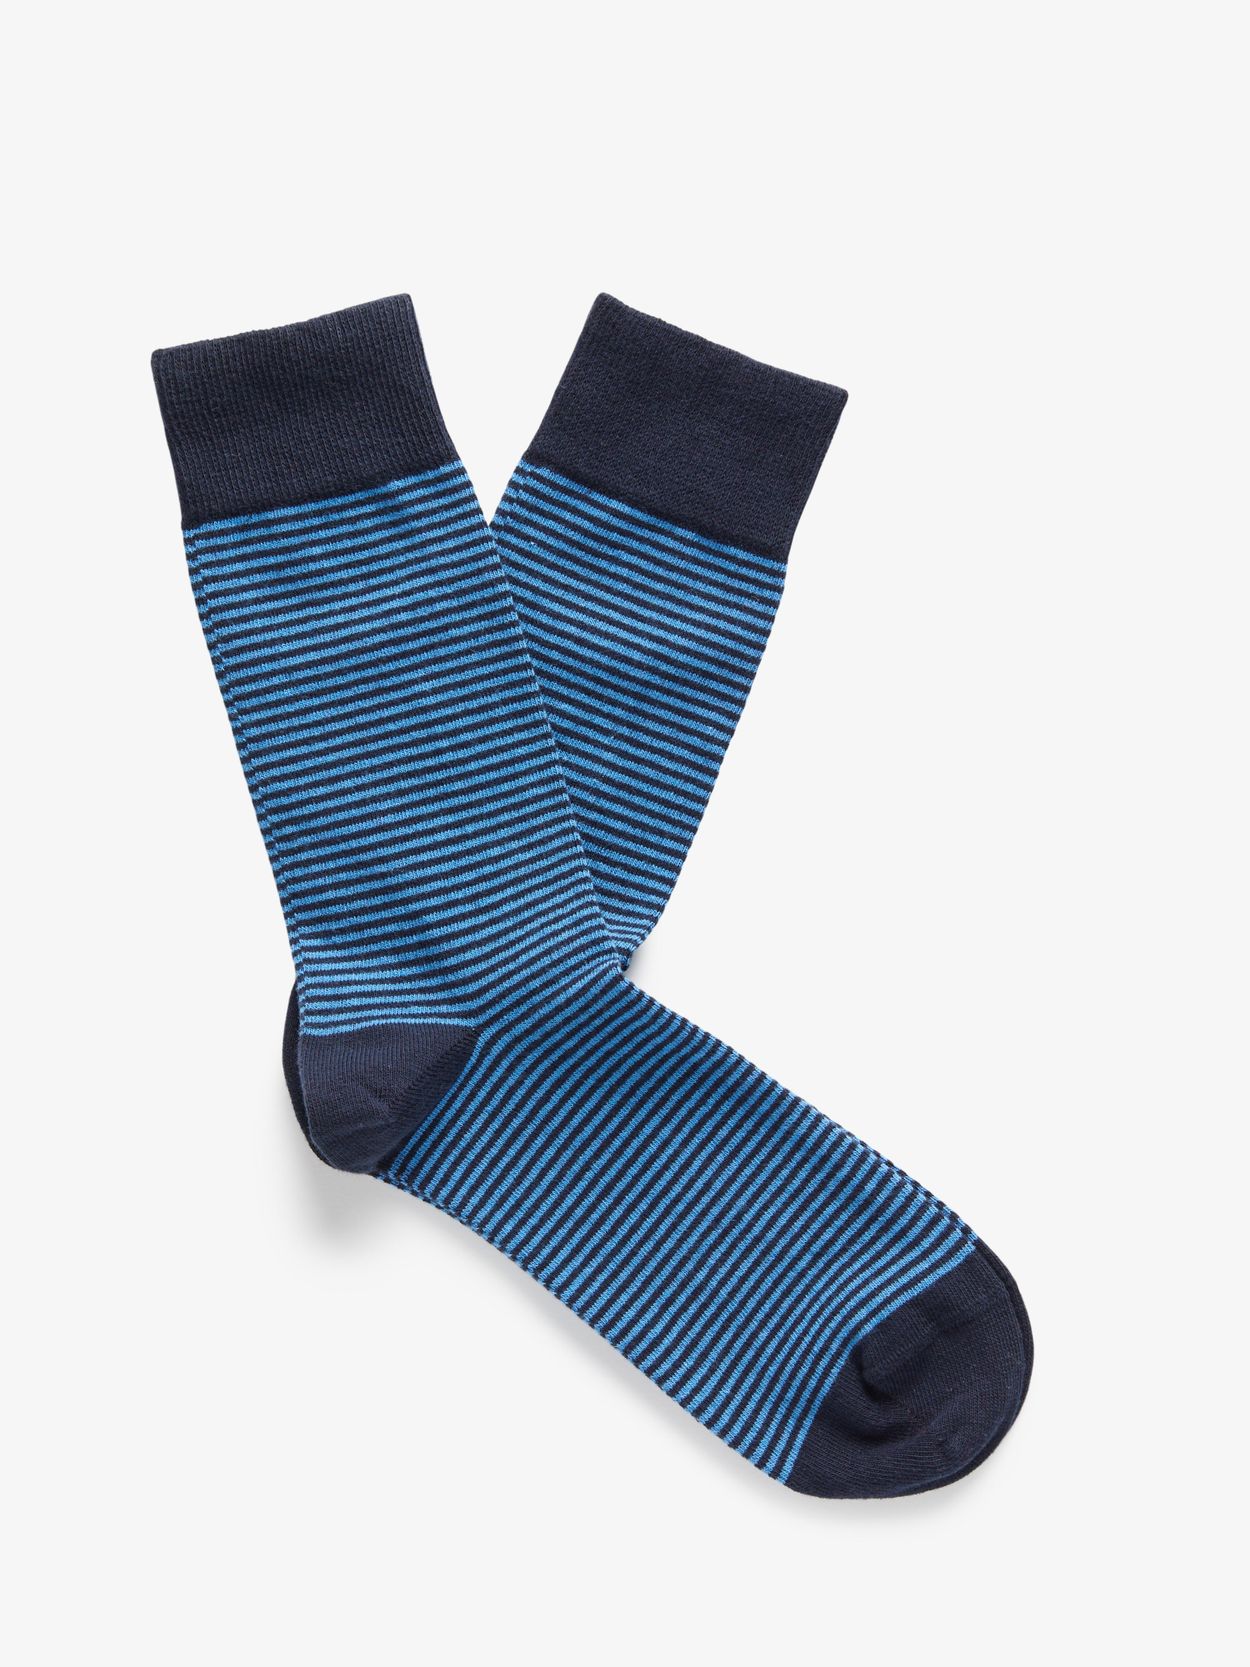 Blue & Cobolt Blue Socks Almeria